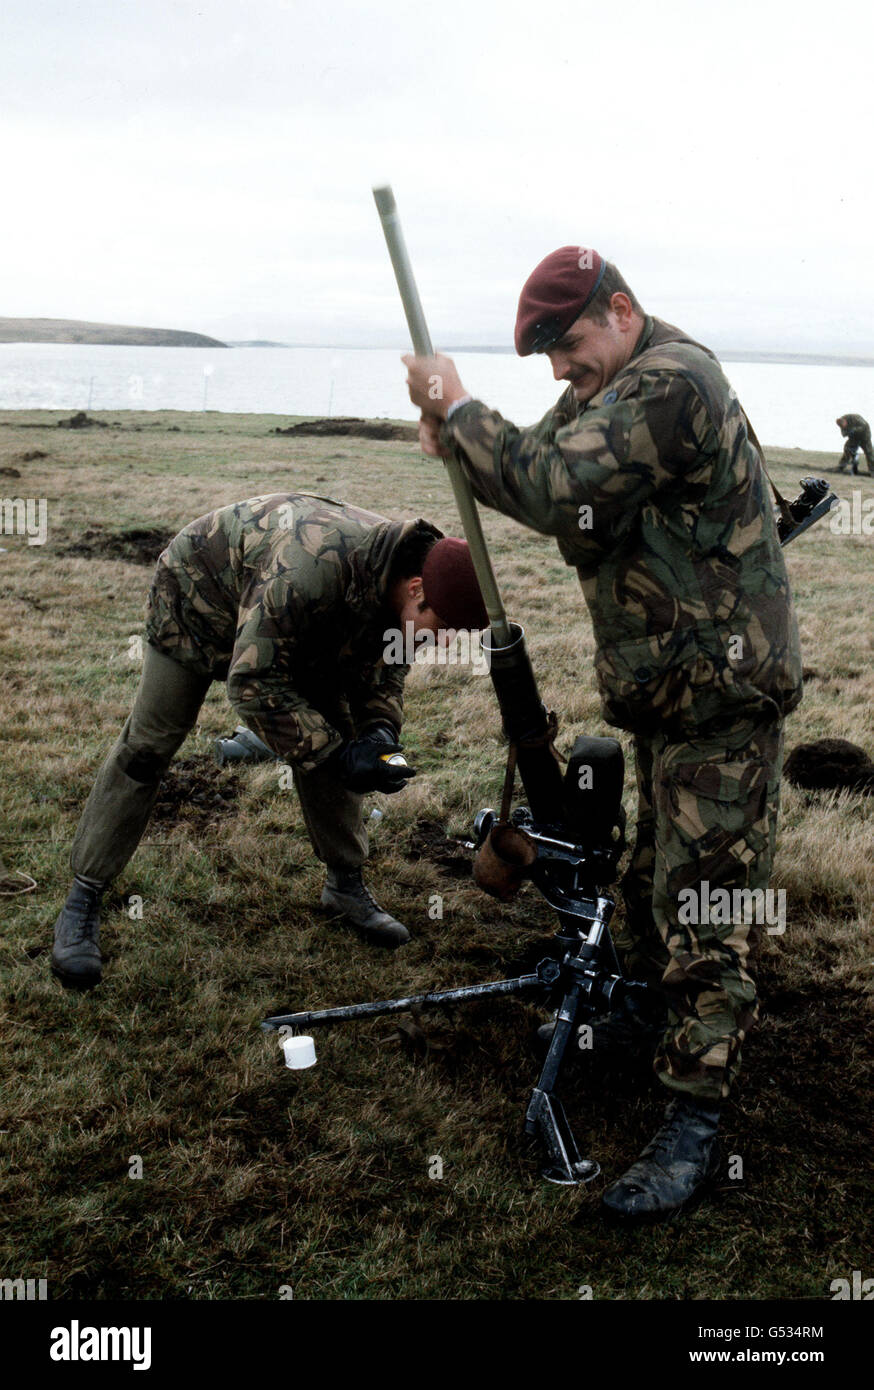 LA GUERRA DELLE FALKLANDS: I paracadutisti della Task Force delle Isole Falkland britanniche hanno ripuliti un mortaio su East Falkland prima della spinta finale su Port Stanley, la capitale, e la resa delle forze armate argentine il 15 giugno 1982. *25/03/02 Paracadutisti della Task Force delle Isole Falkland britanniche hanno ripuliti un mortaio su East Falkland prima della spinta finale su Port Stanley, la capitale, e la resa delle forze armate argentine il 15 giugno 1982. Il 20° anniversario dell'invasione delle Falklands da parte delle forze argentine sarà il 2 aprile 2002. Foto Stock